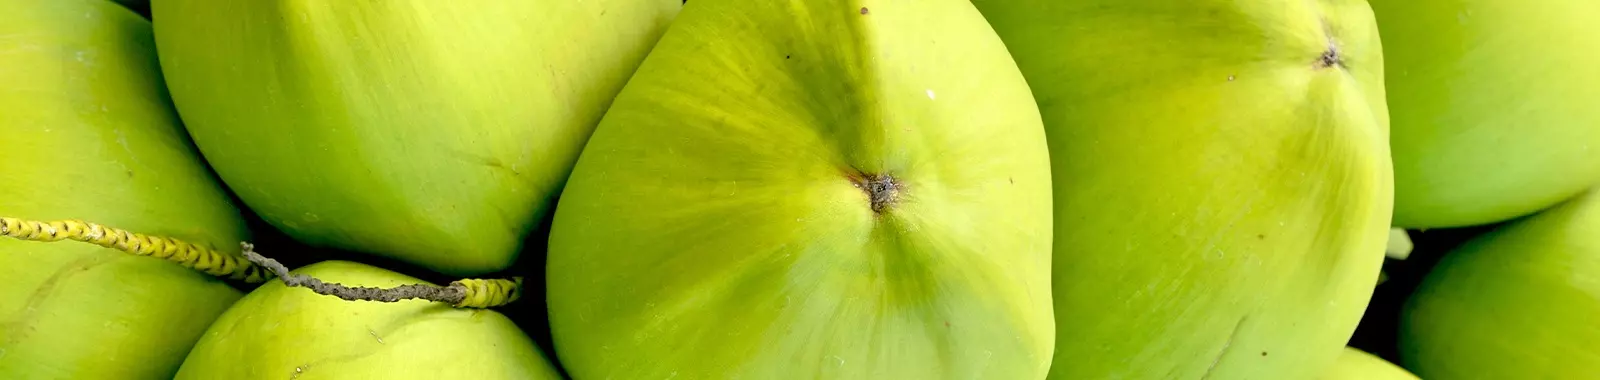 Cocos verdes